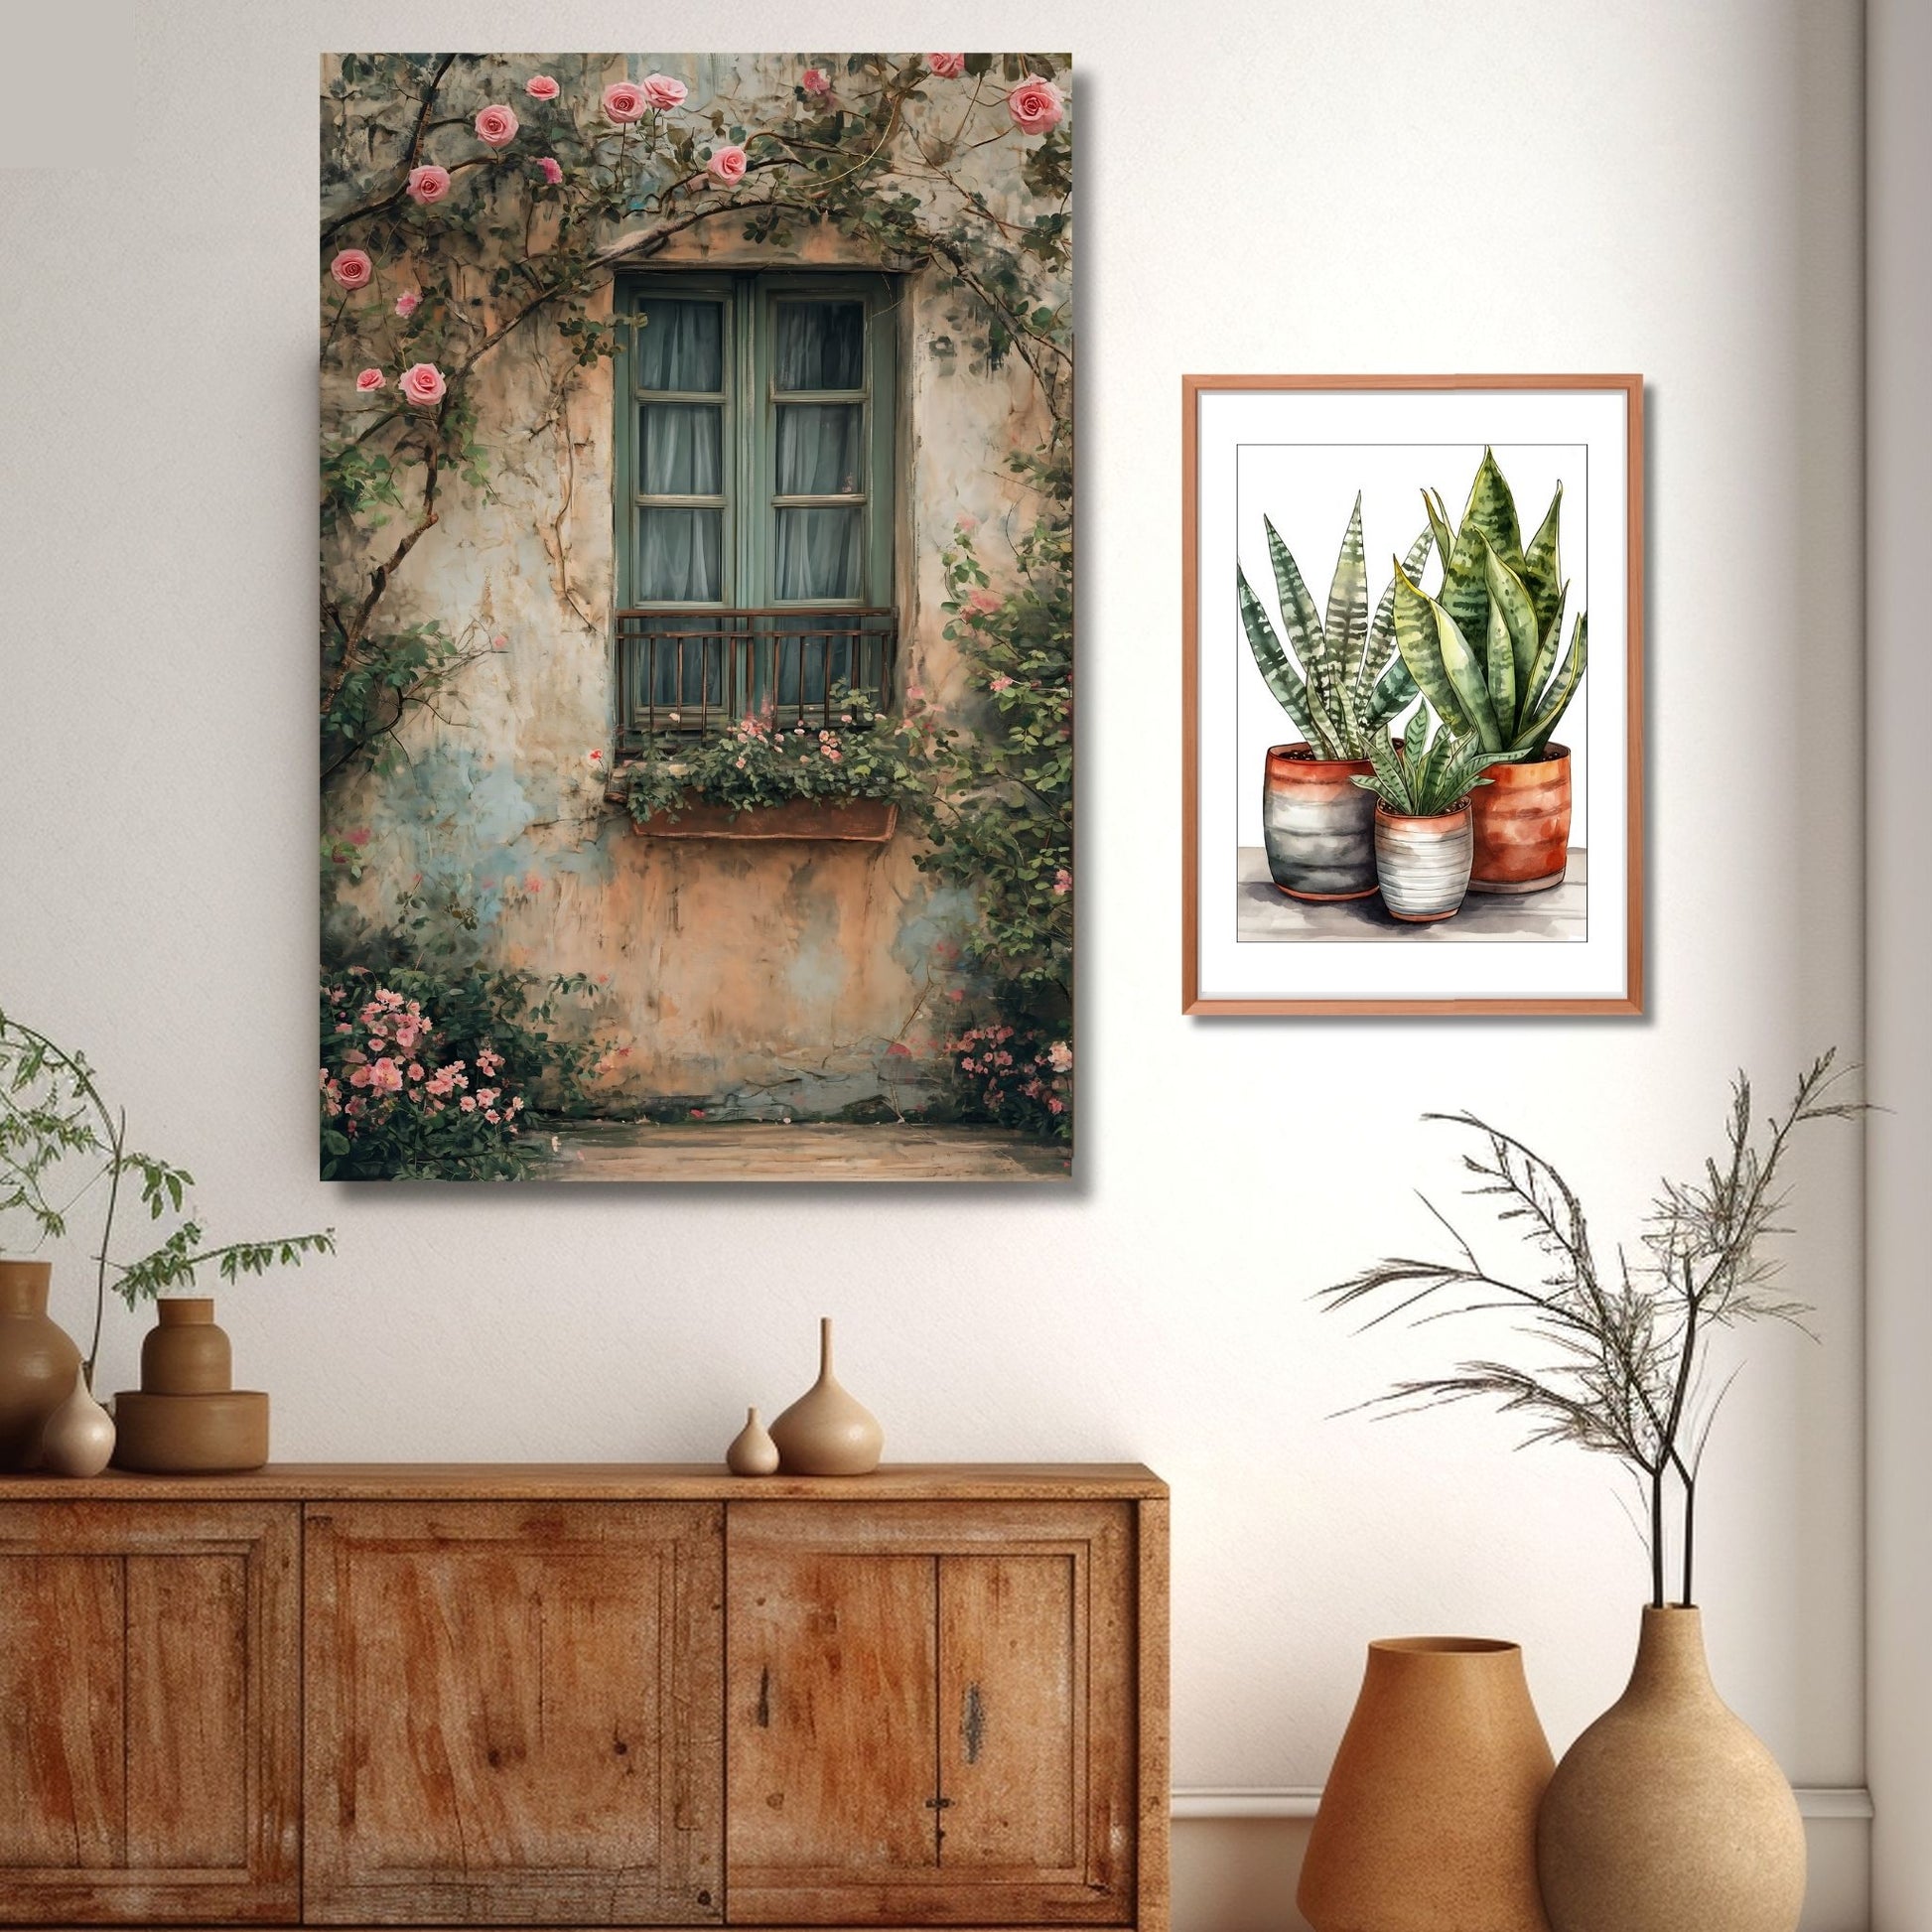 Fotografi av et vindu med grønne karmer på et gammelt hus. Foran vinduet henger en blomsterkasse og rundt vinduet vokser et rosetre med rosa blomster. Illustrasjonen viser fotografiet på lerret over et skap.